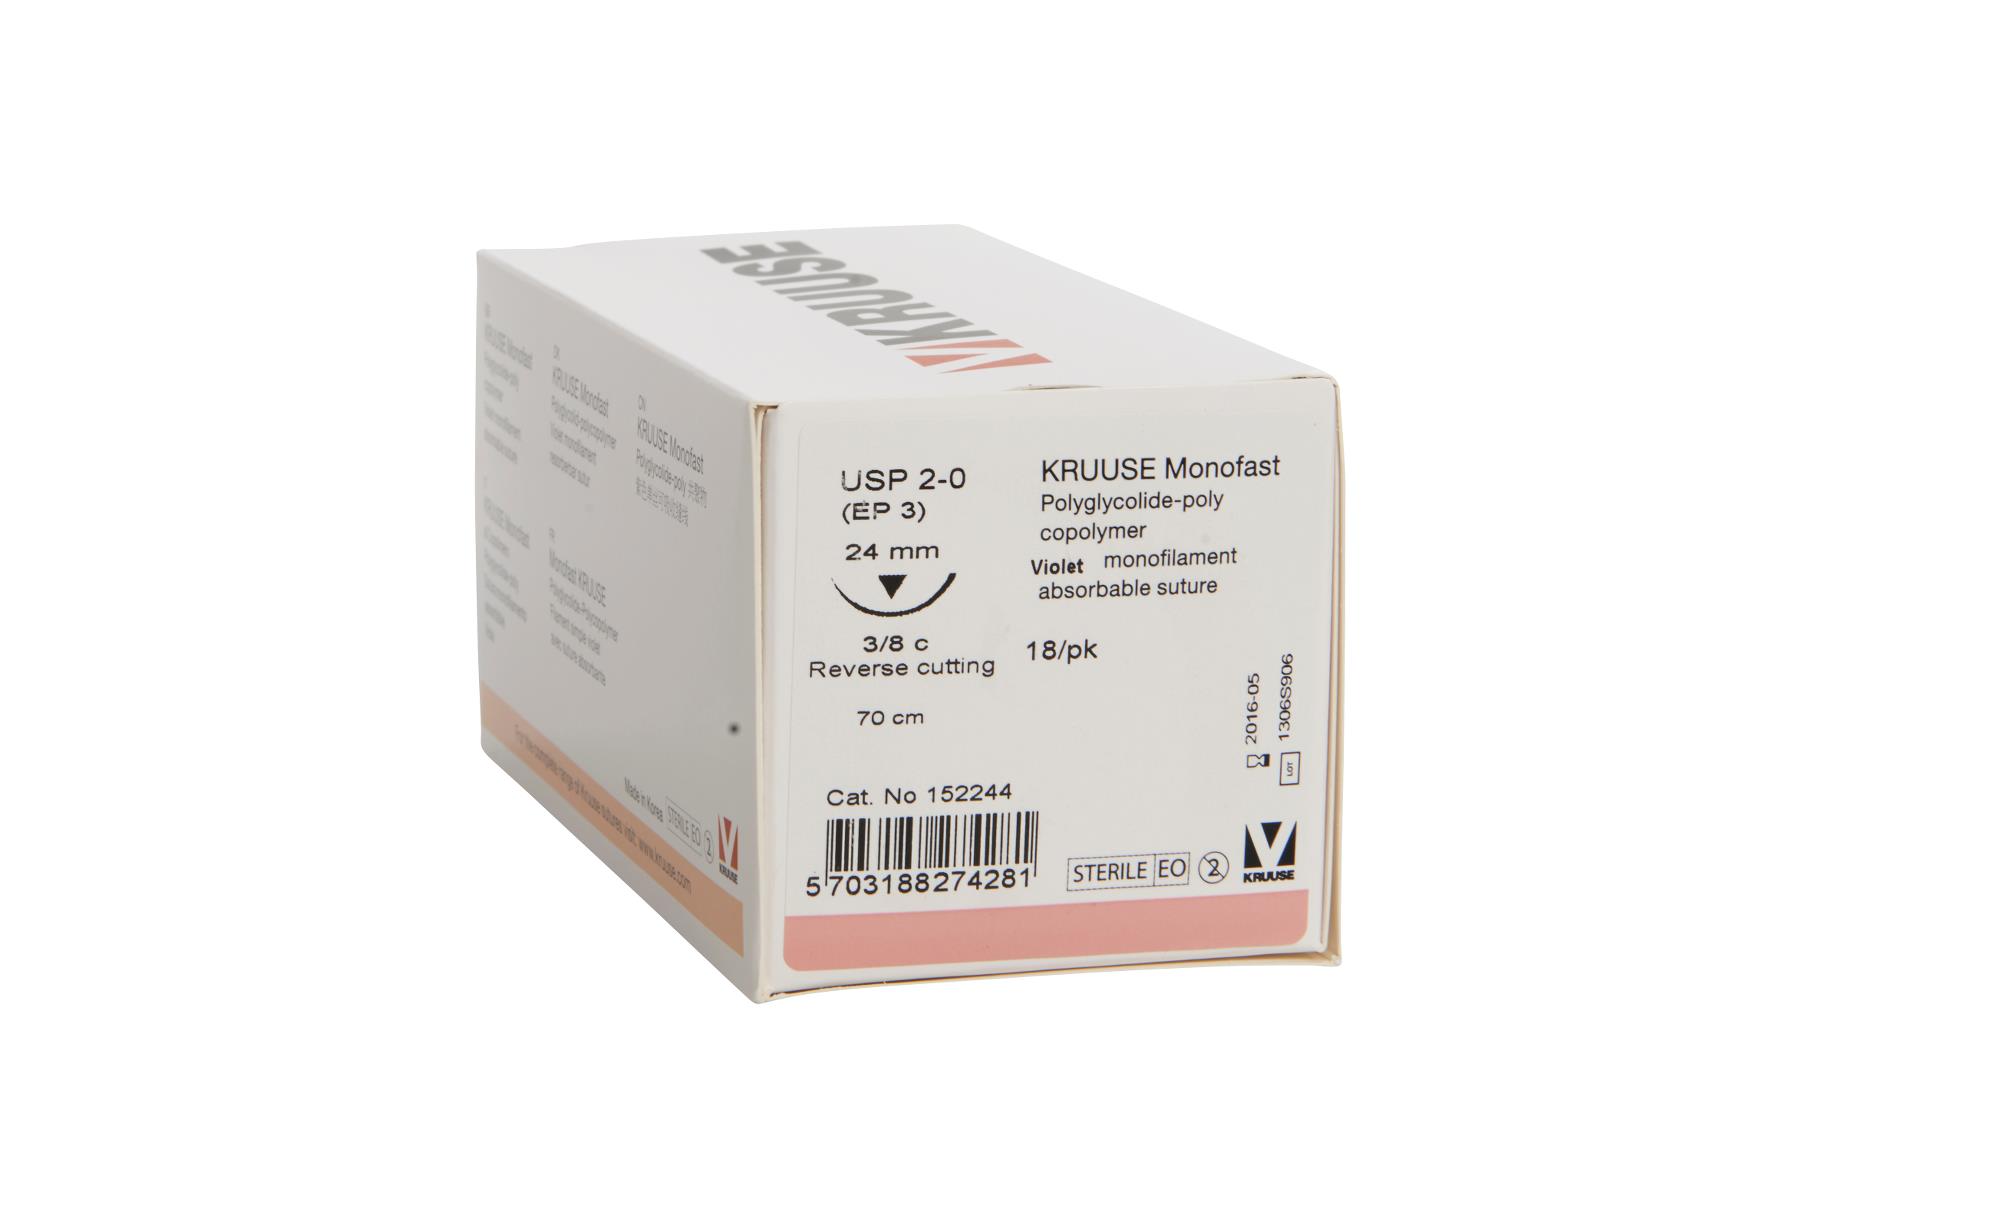 KRUUSE Monofast Suture, USP 2-0, 70 cm, purple, 24 mm needle, 3/8 C, RC, 18/pk